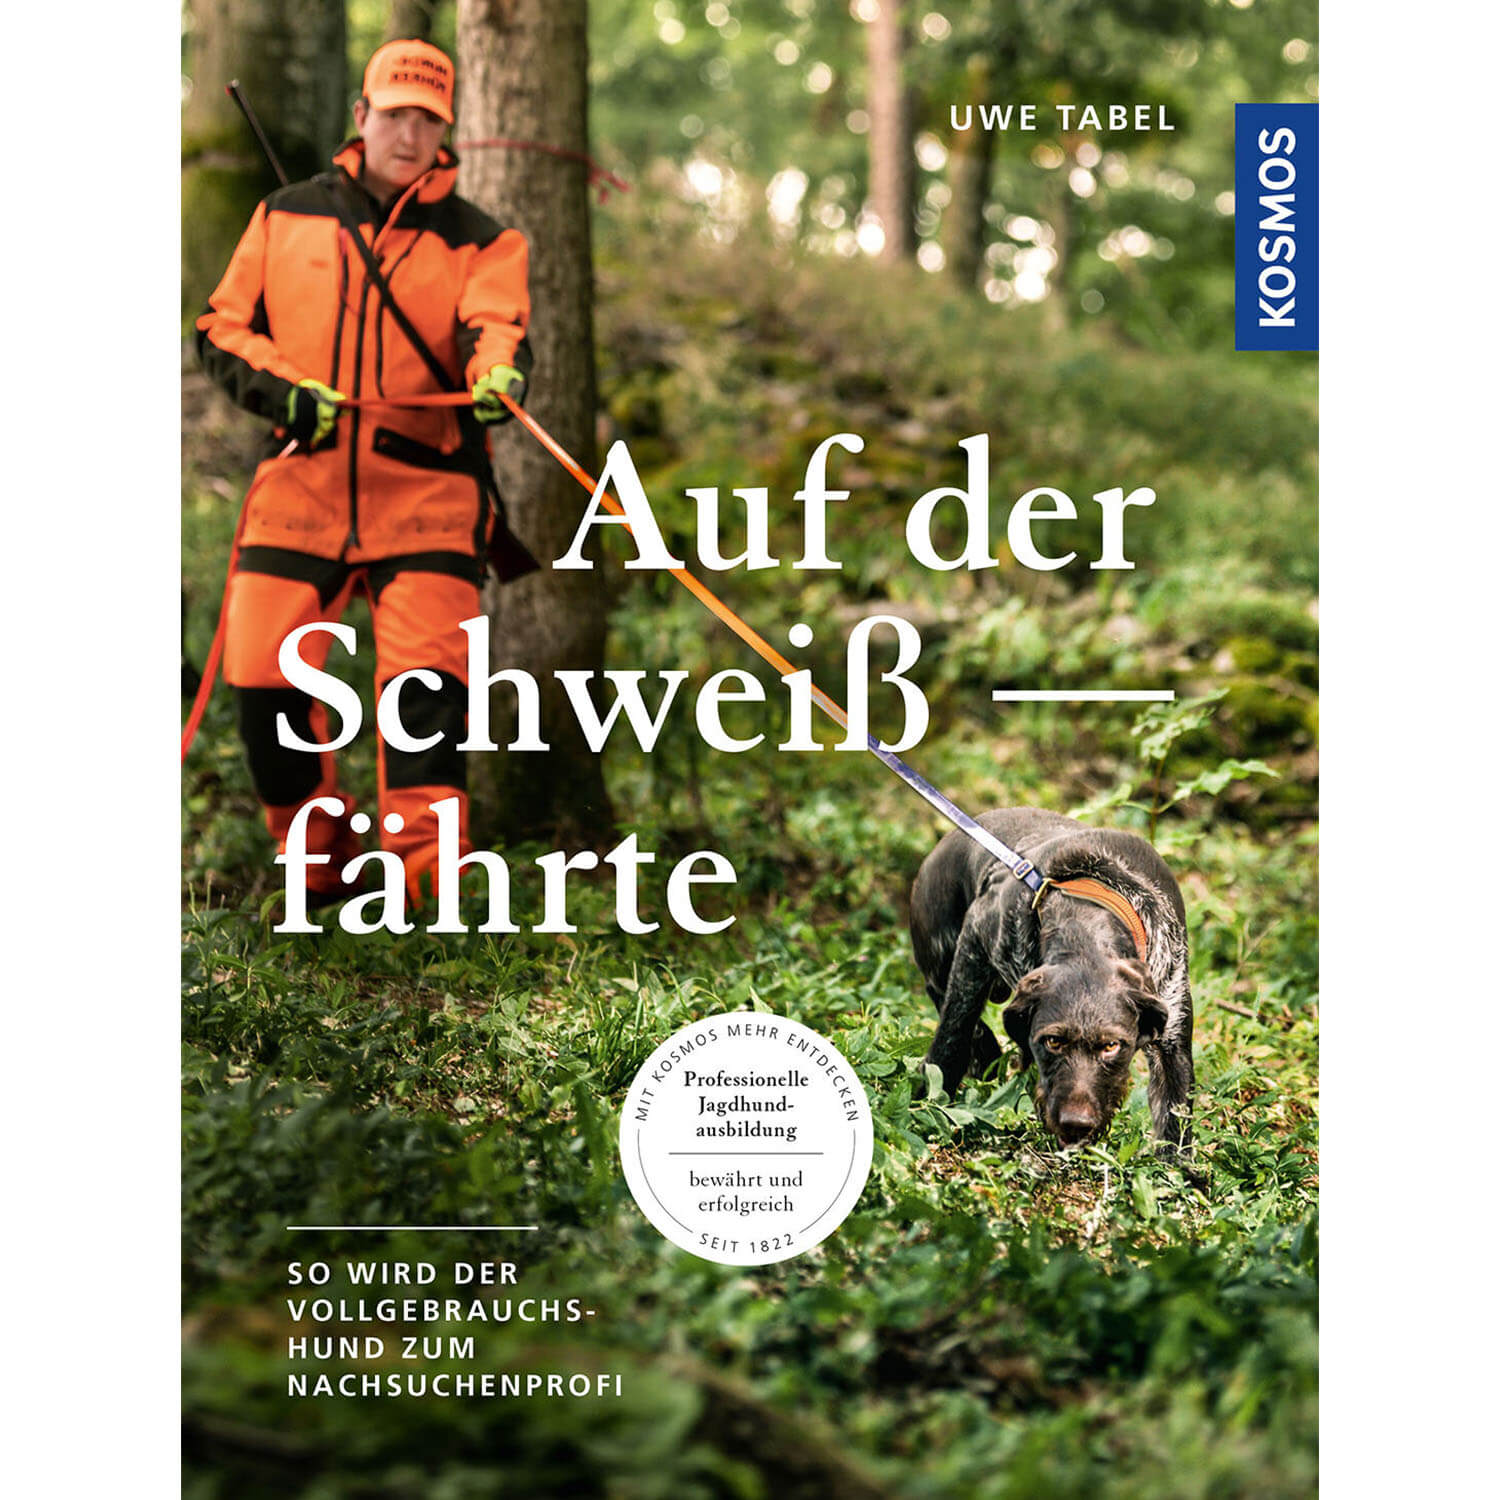 Auf der Schweißfährte - Buch - Uwe Tabel - Jagdausrüstung